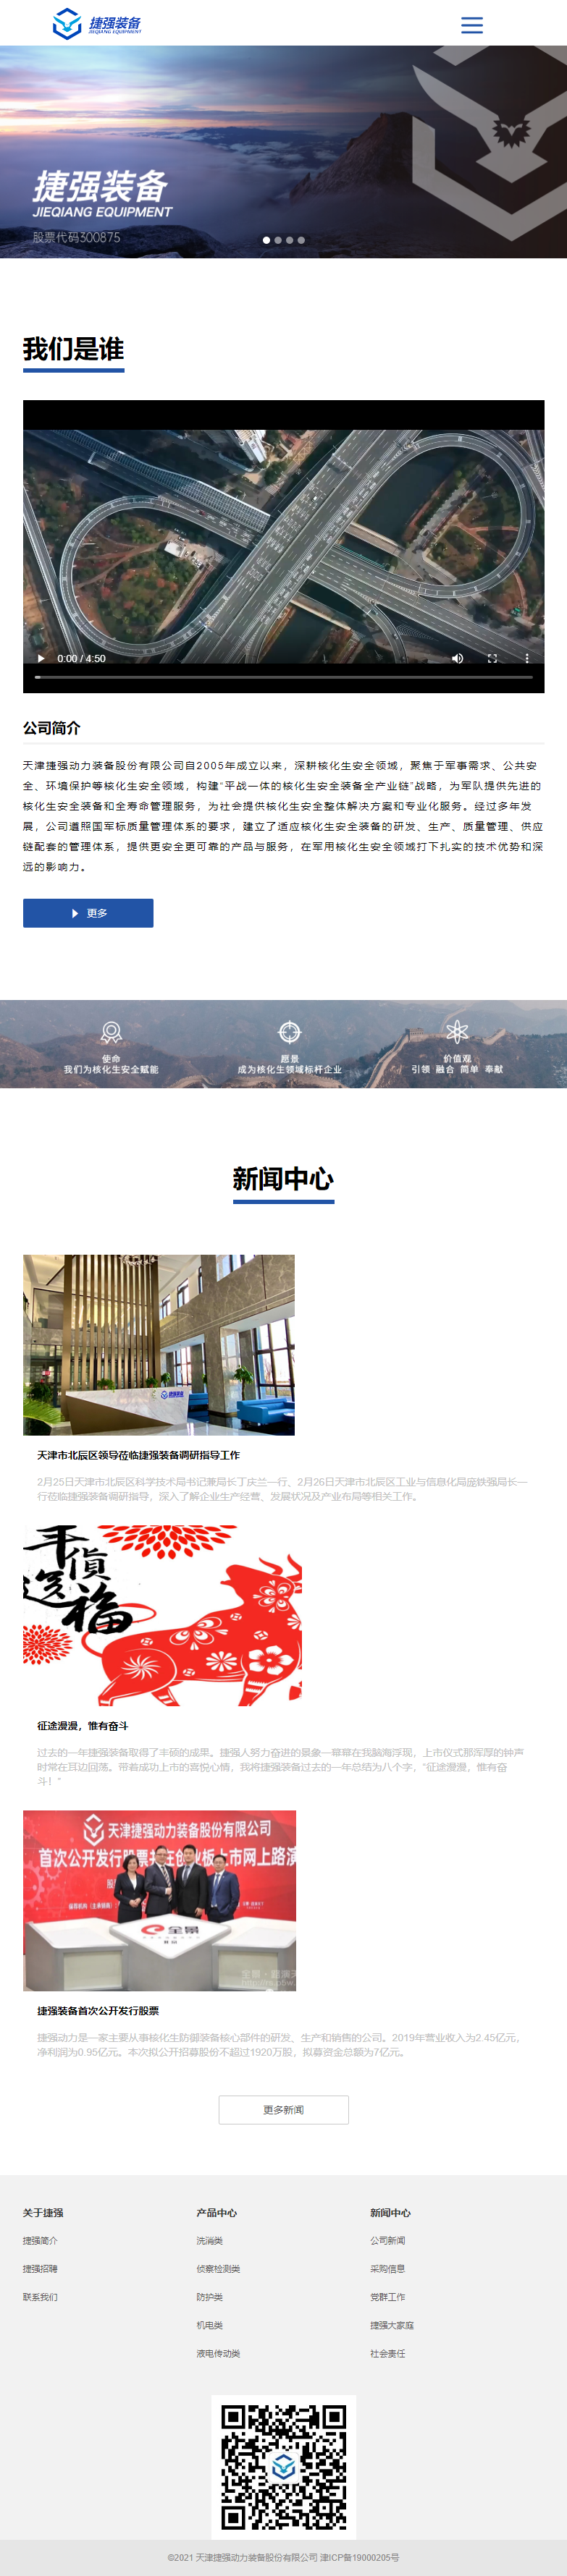 天津捷强动力装备股份有限公司网站案例